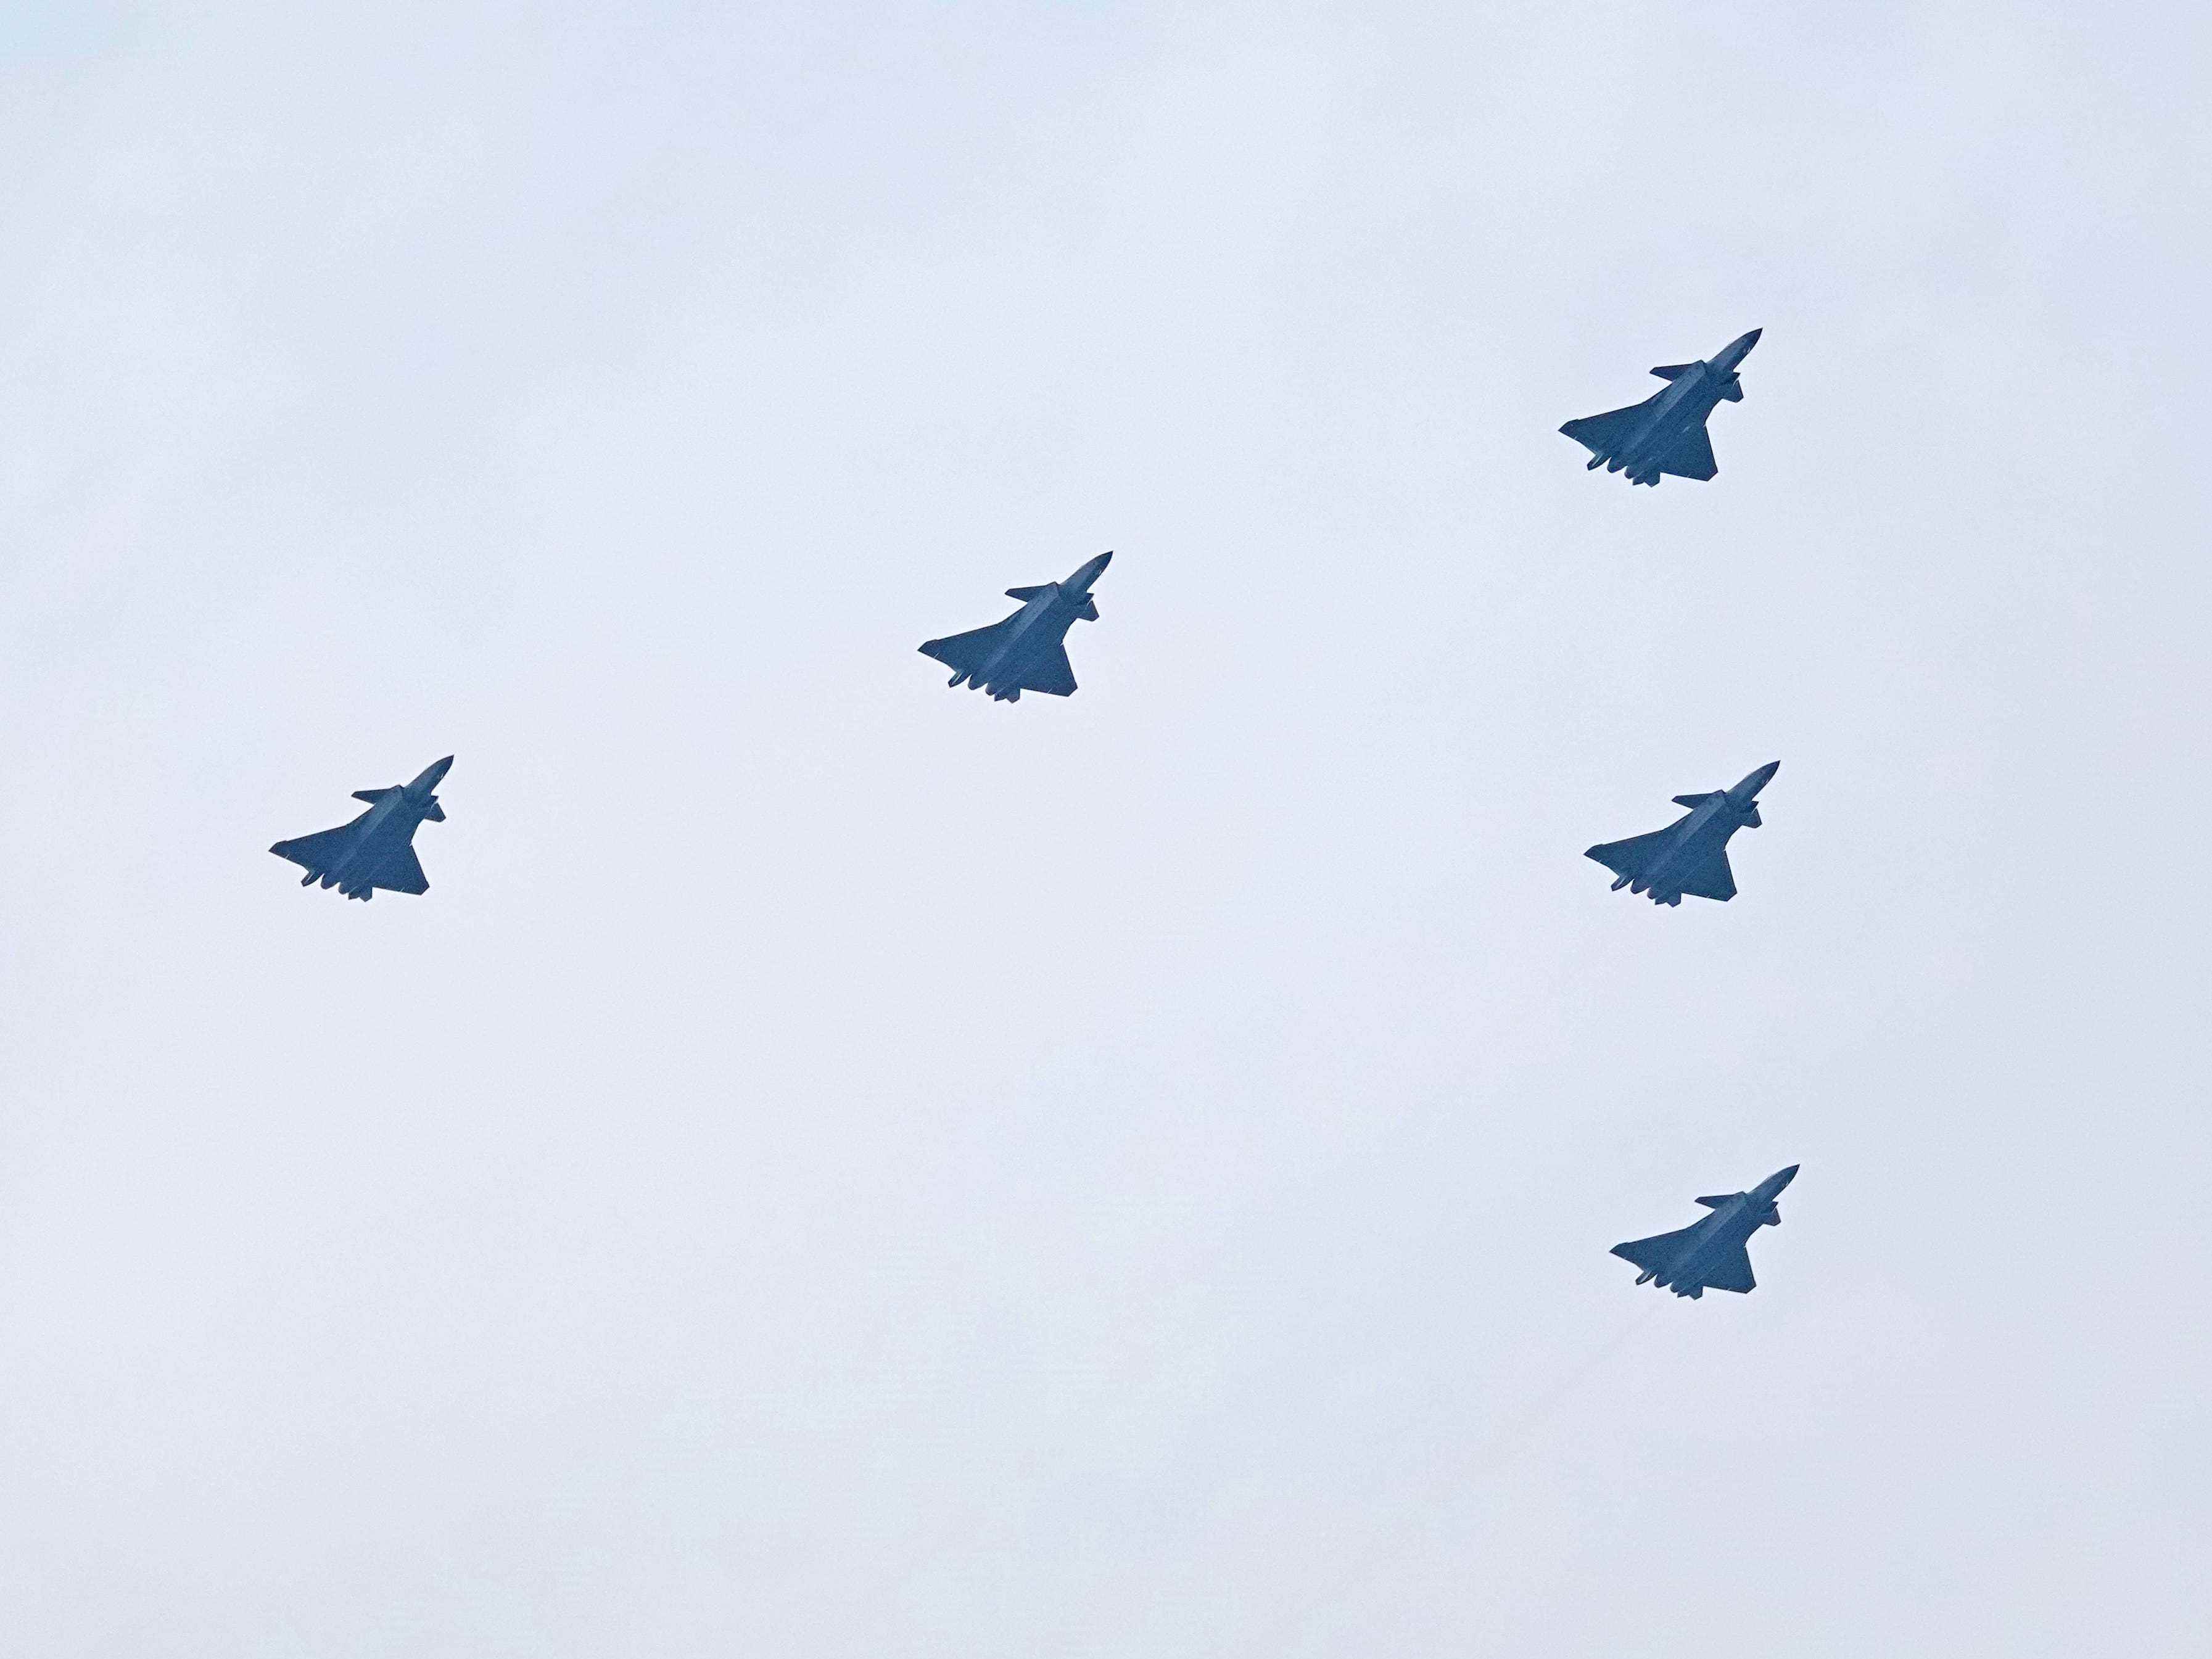 J-20-Kampfflugzeuge fliegen in Formation während einer Flugvorführung zur Feier des 100. Jahrestages der Gründung der Kommunistischen Partei Chinas (KPCh) in Peking, China, 1. Juli 2021.